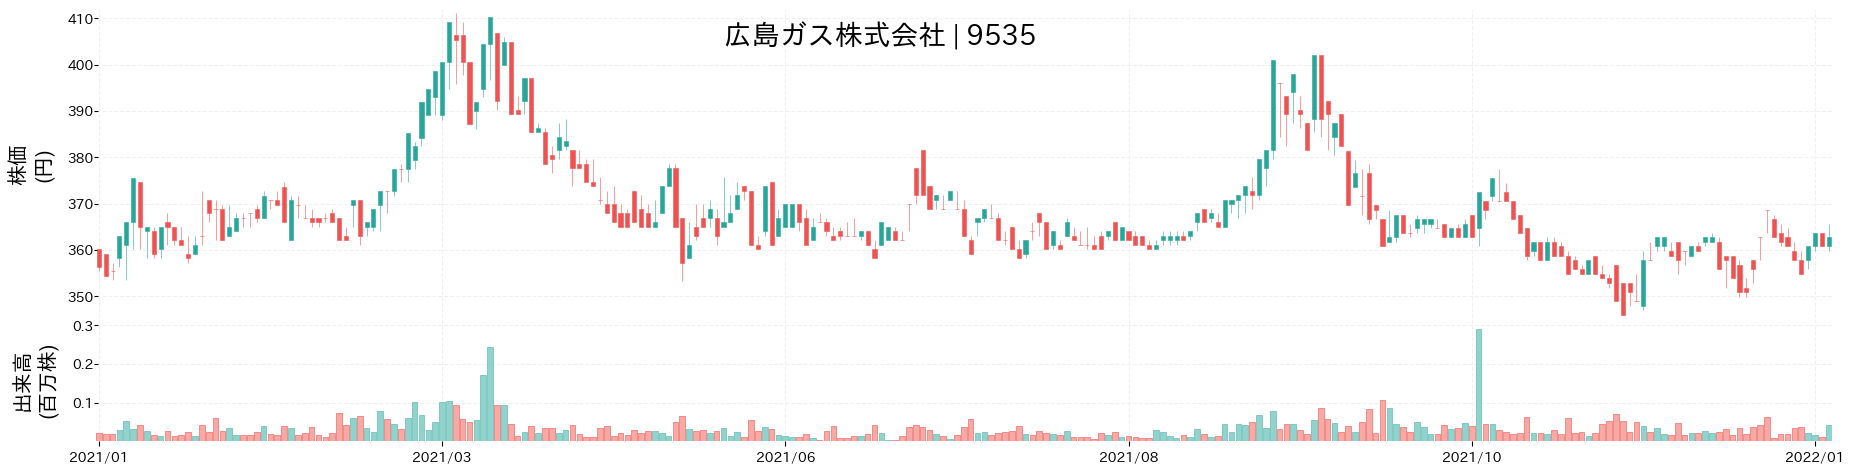 広島ガスの株価推移(2021)